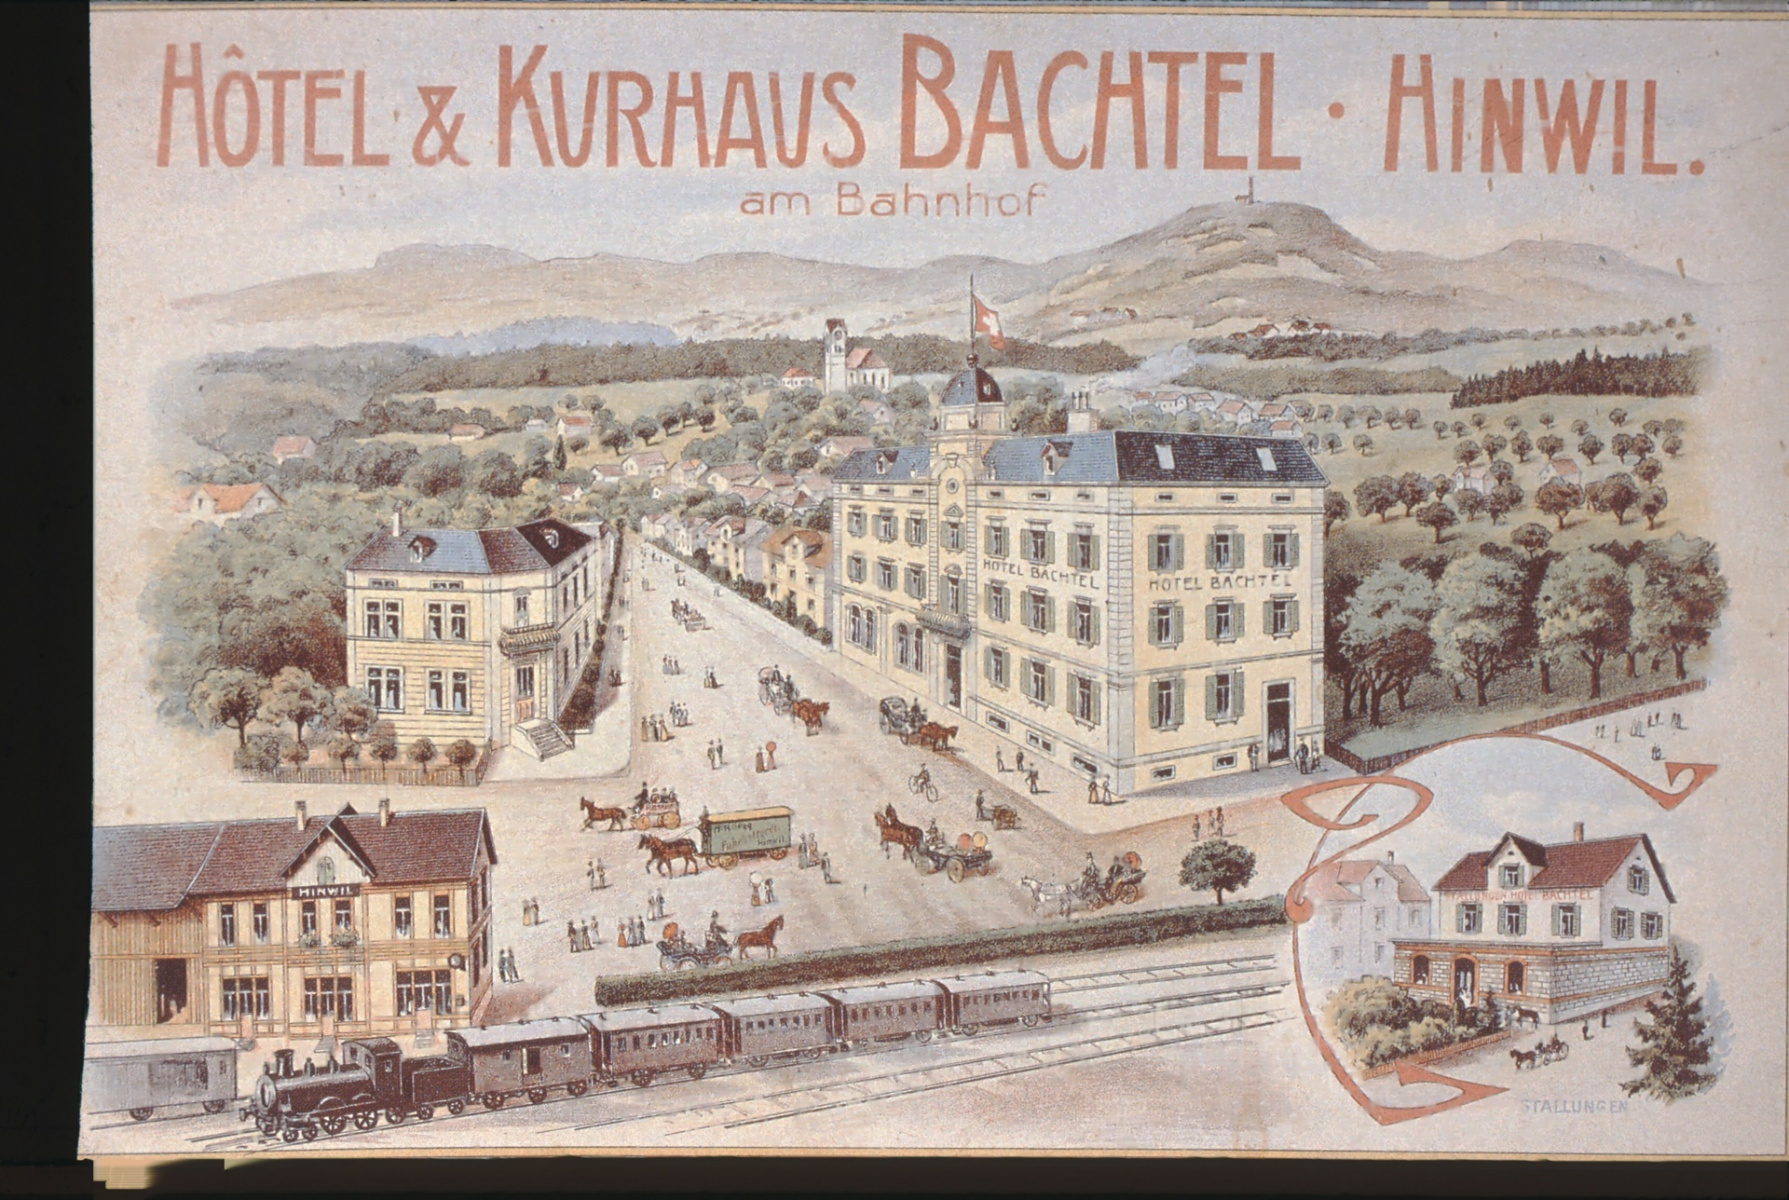 UeBB. Hotel Bachtel Hinwil. Hier fand am 30.05.1901 das Bankett zur Eröffnung statt